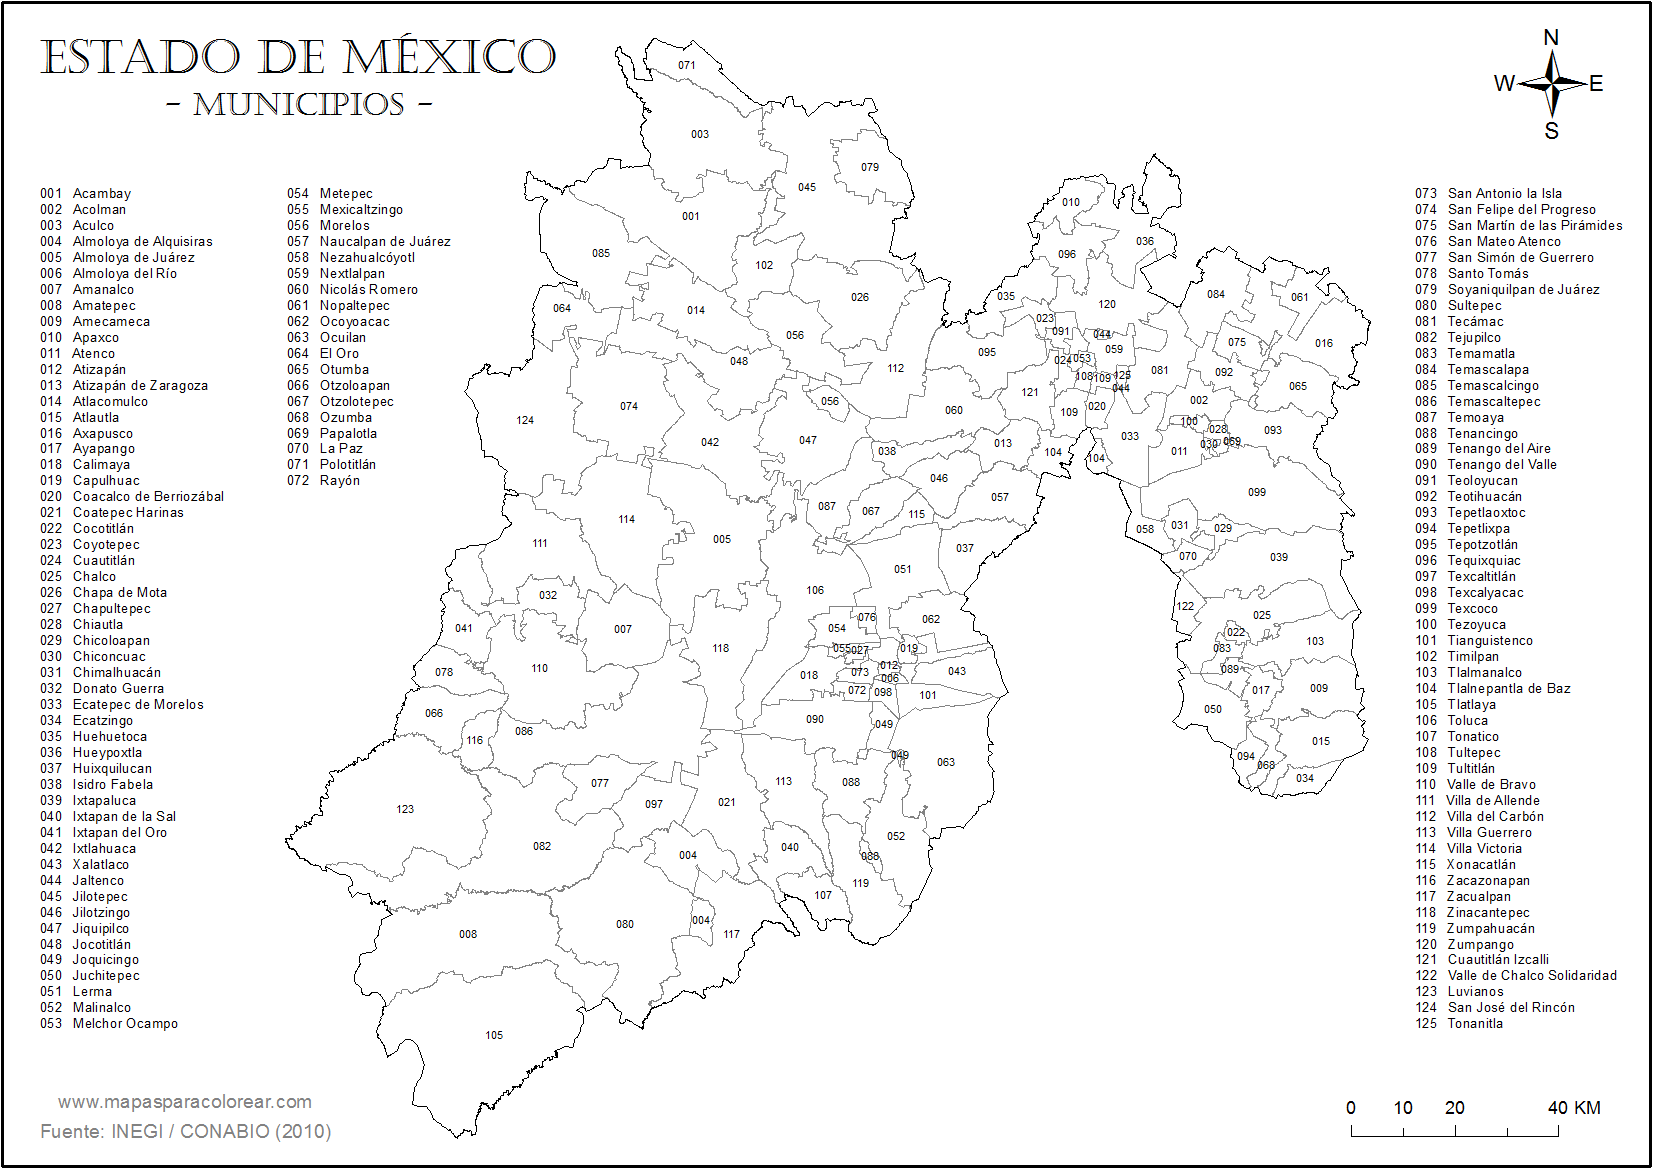 Mapa del estado de mexico